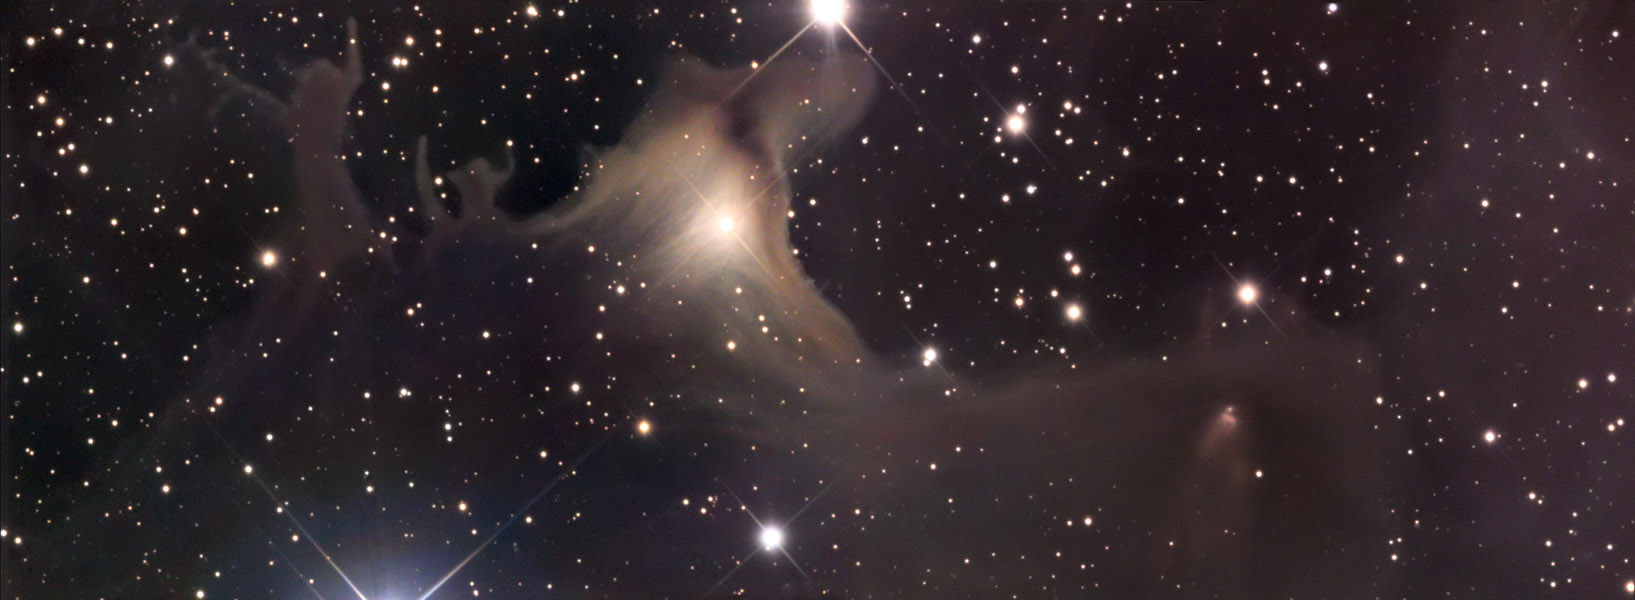 Звездное небо астронет. Тёмная туманность sh2-136. Nebula sh2-316. Sh2-136. Туманность излучает свет если её освещает близлежащая звезда.